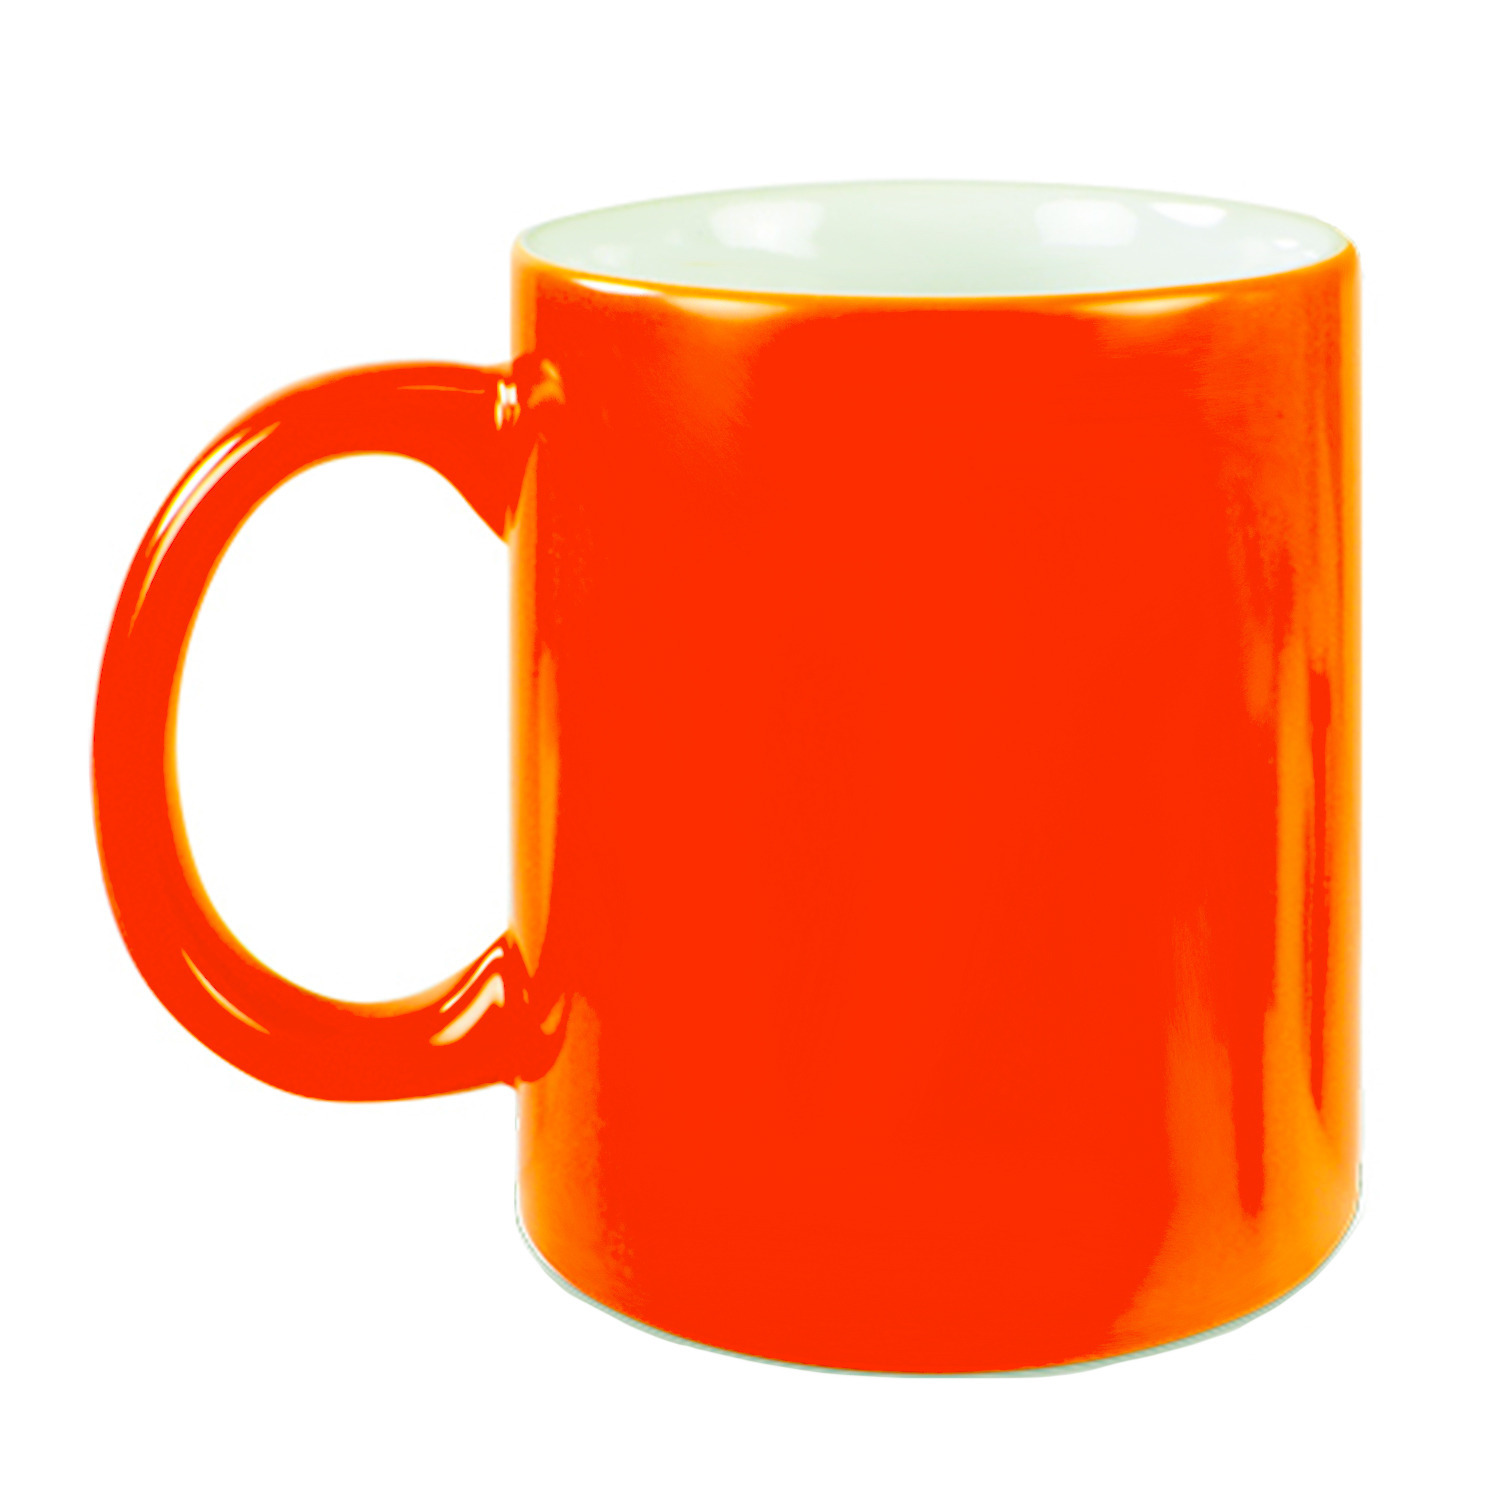 1x stuks neon oranje bekers- koffiemokken 330 ml